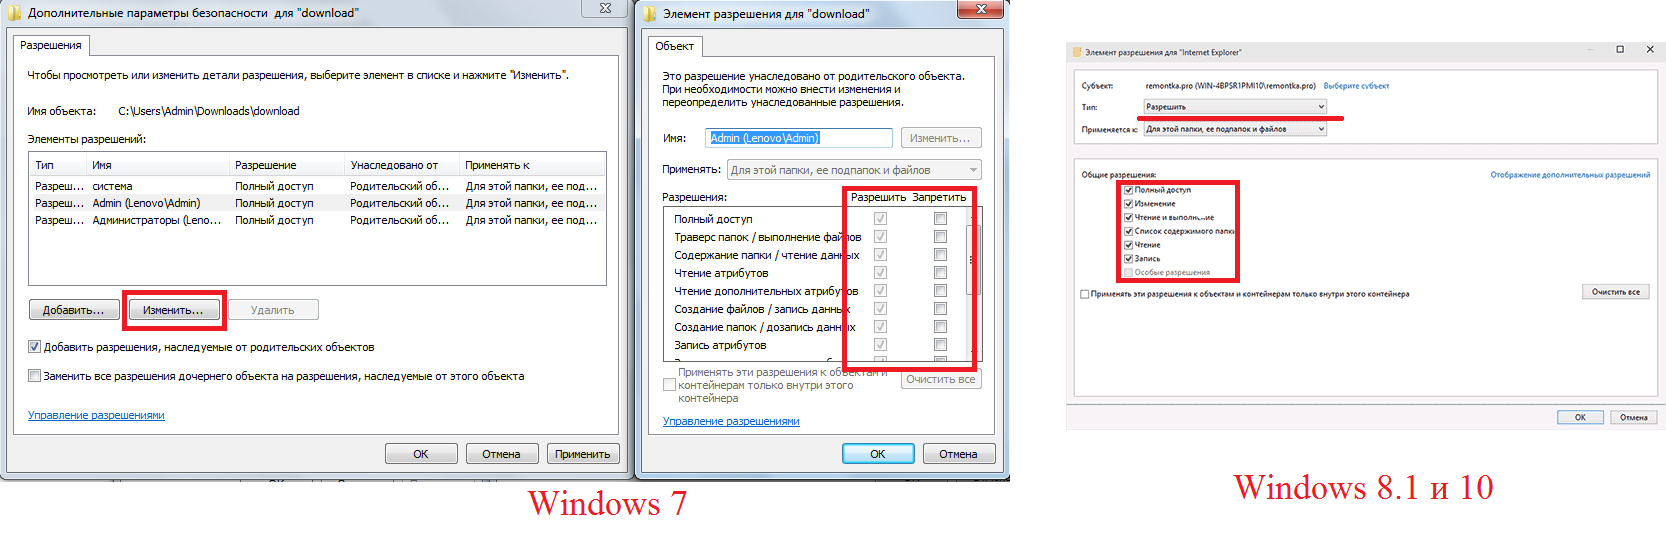 Восстанавливаем системные файлы в windows 10